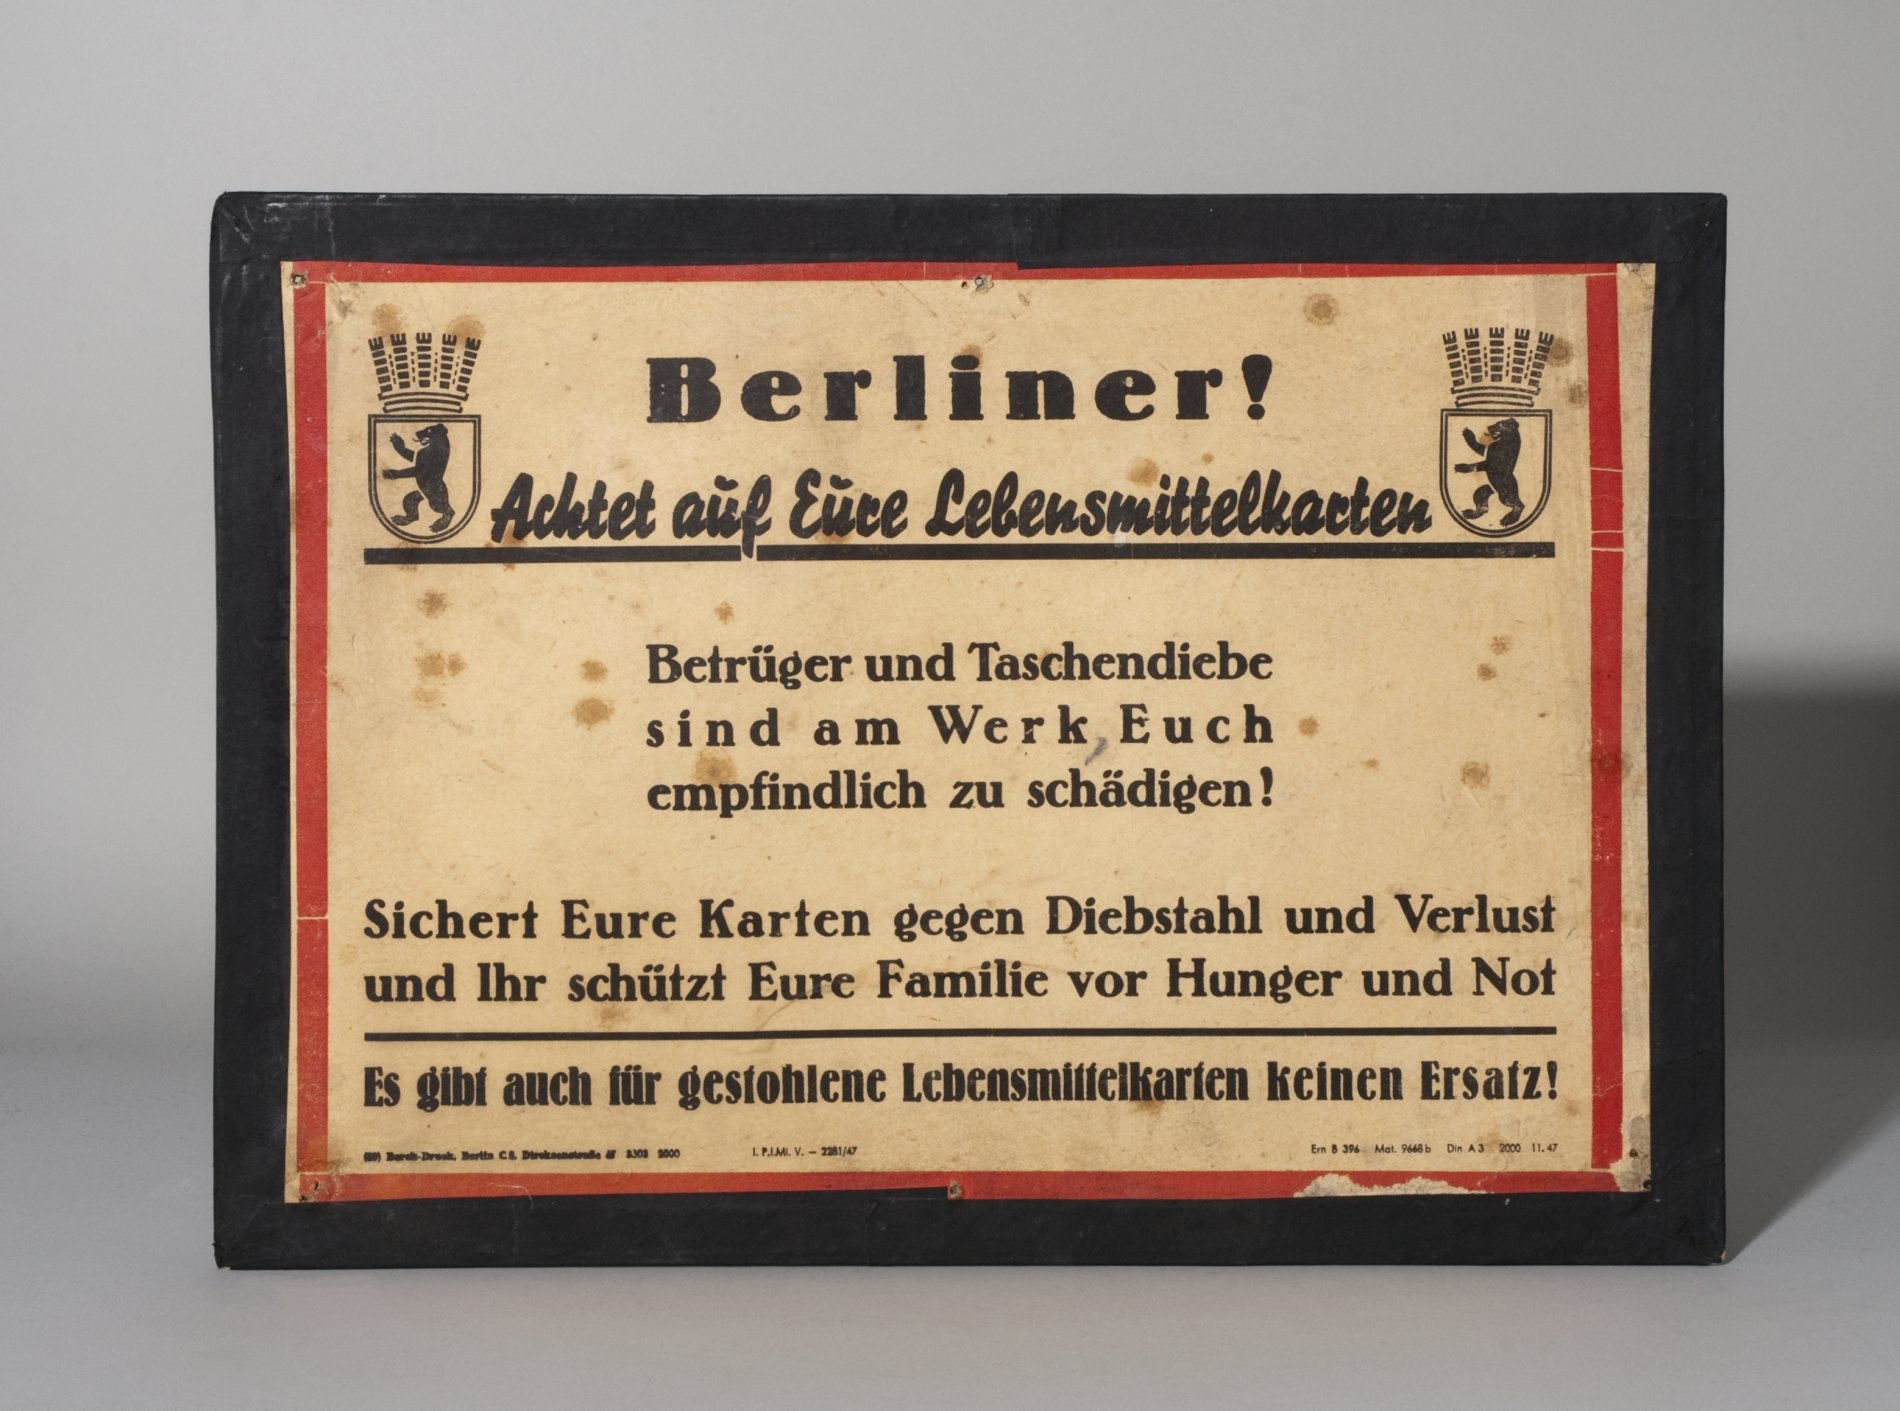 HInweisschild "Berliner! Achtet auf Eure Lebensmittelkarten" (Stiftung Domäne Dahlem - Landgut und Museum, Weiternutzung nur mit Genehmigung des Museums CC BY-NC-SA)